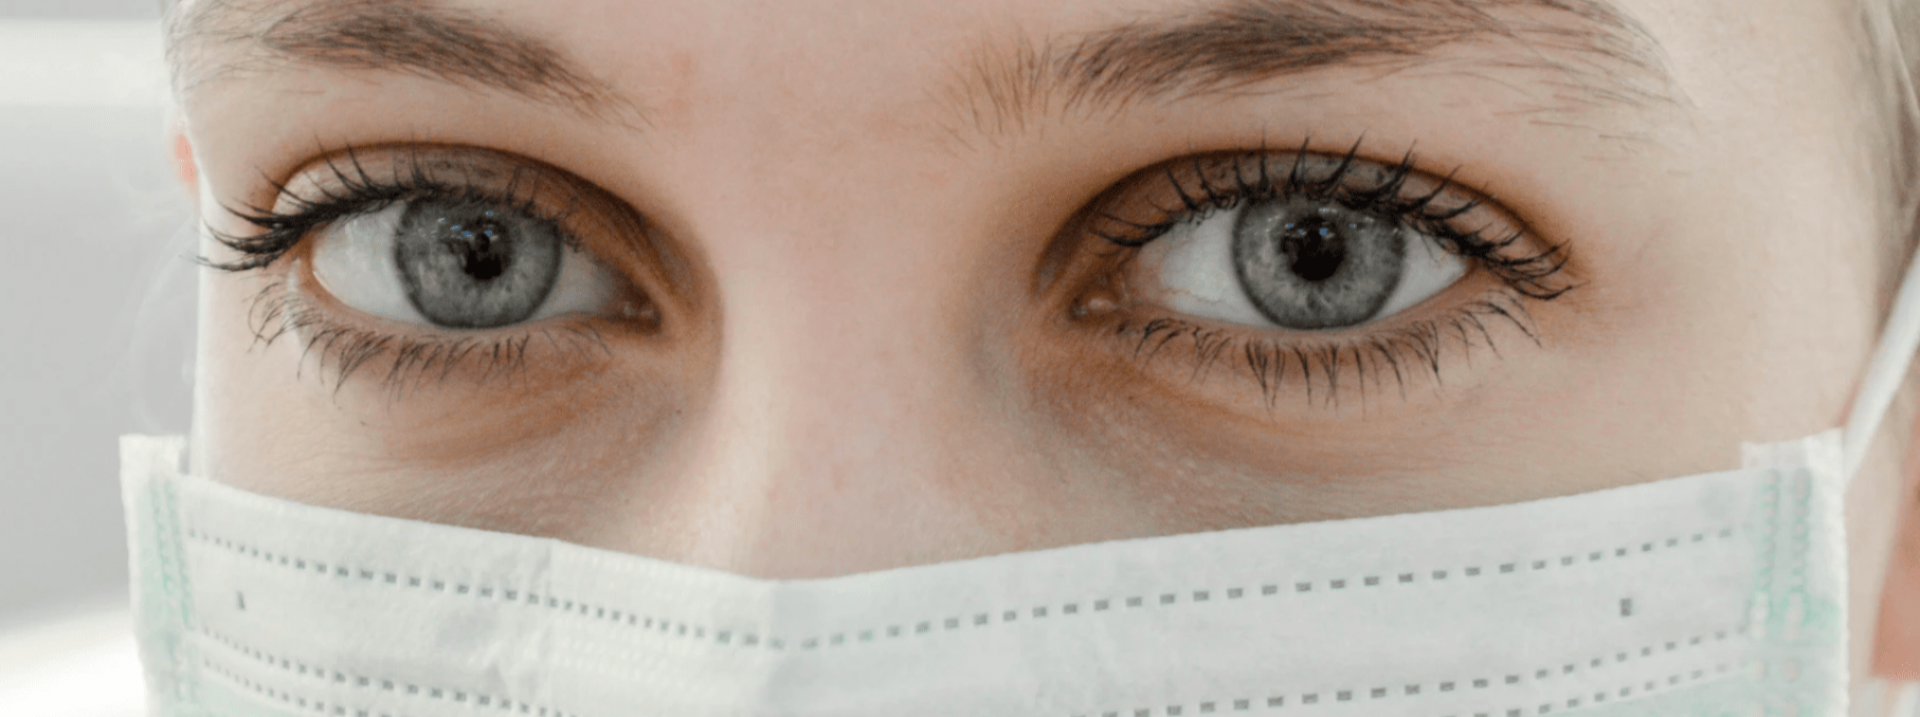 Cuidados com os olhos para prevenir o Coronavírus